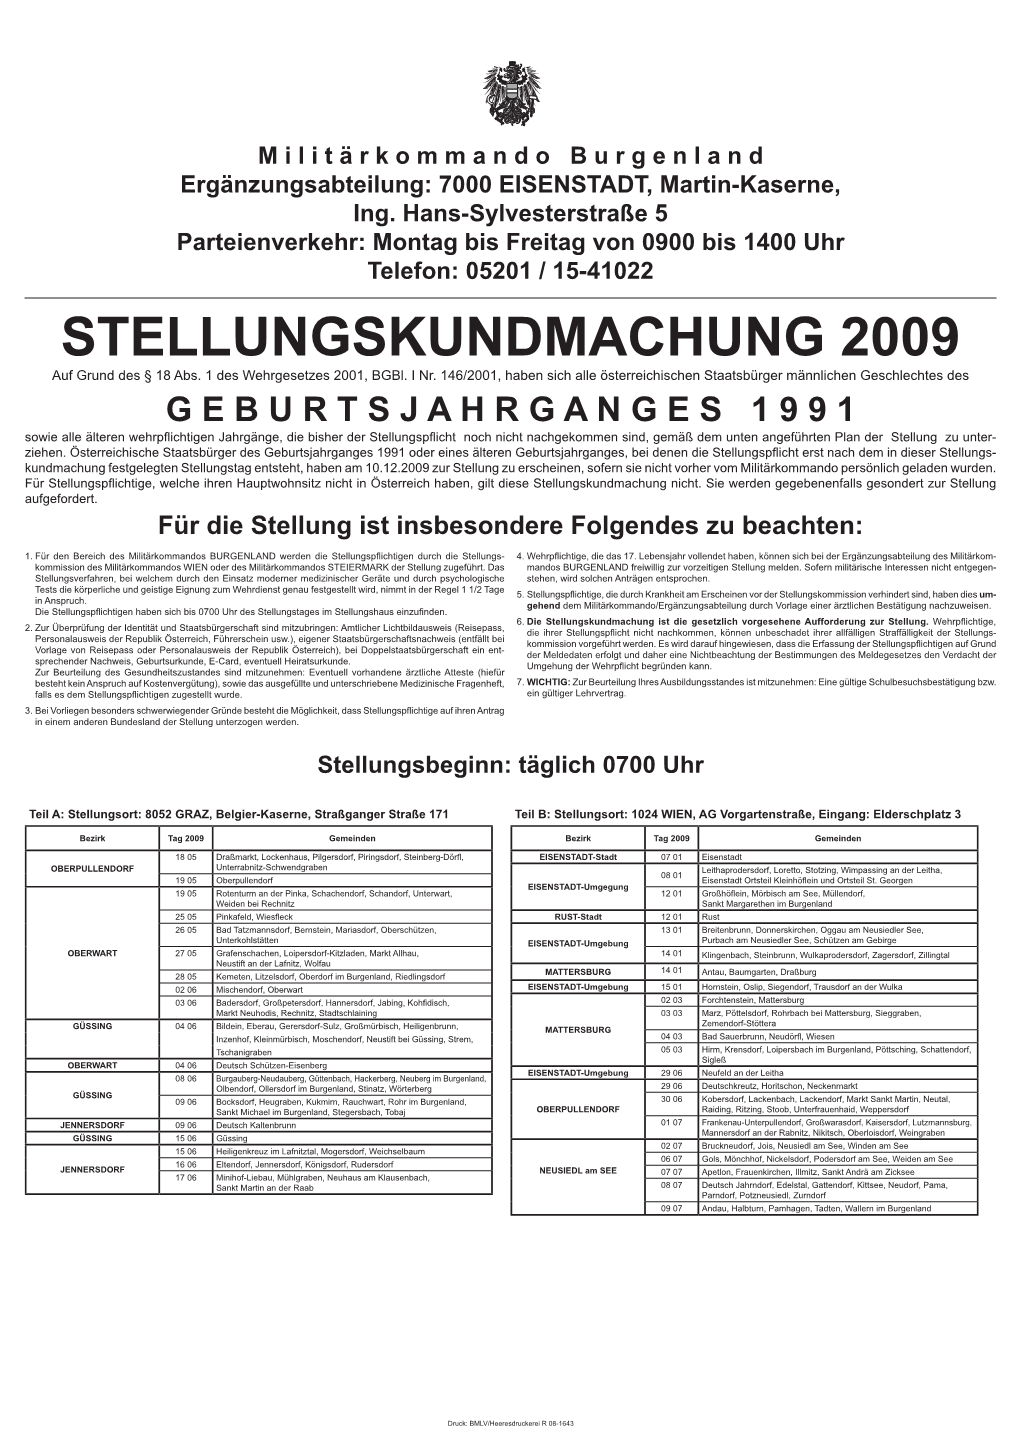 STELLUNGSKUNDMACHUNG 2009 Auf Grund Des § 18 Abs